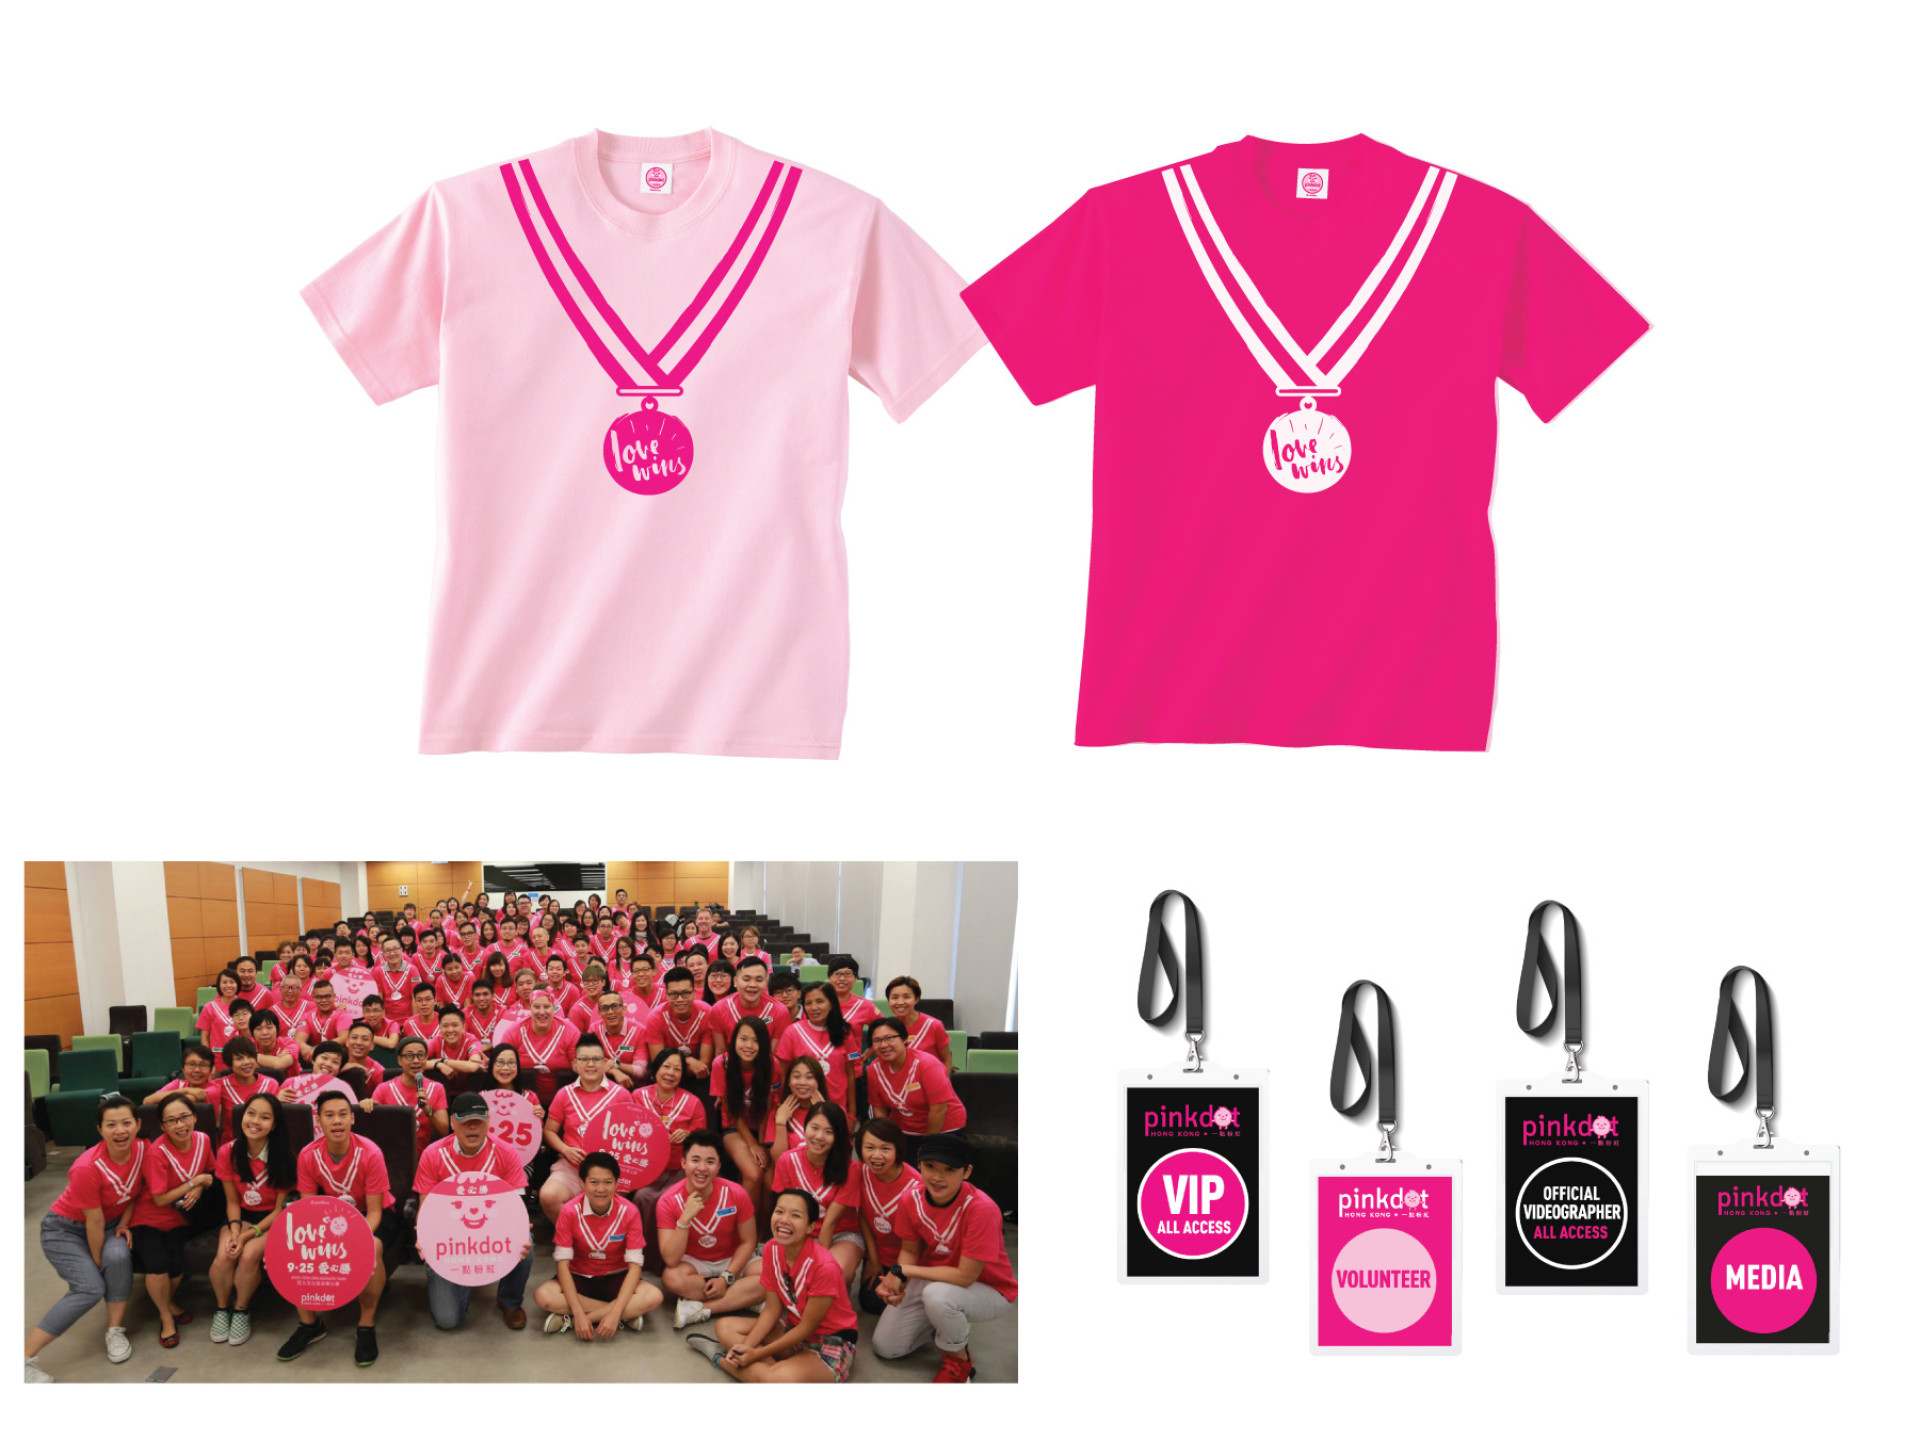 Pink Dot Hong Kong 2016 event key art, logo, branding, mascot and merchandise design